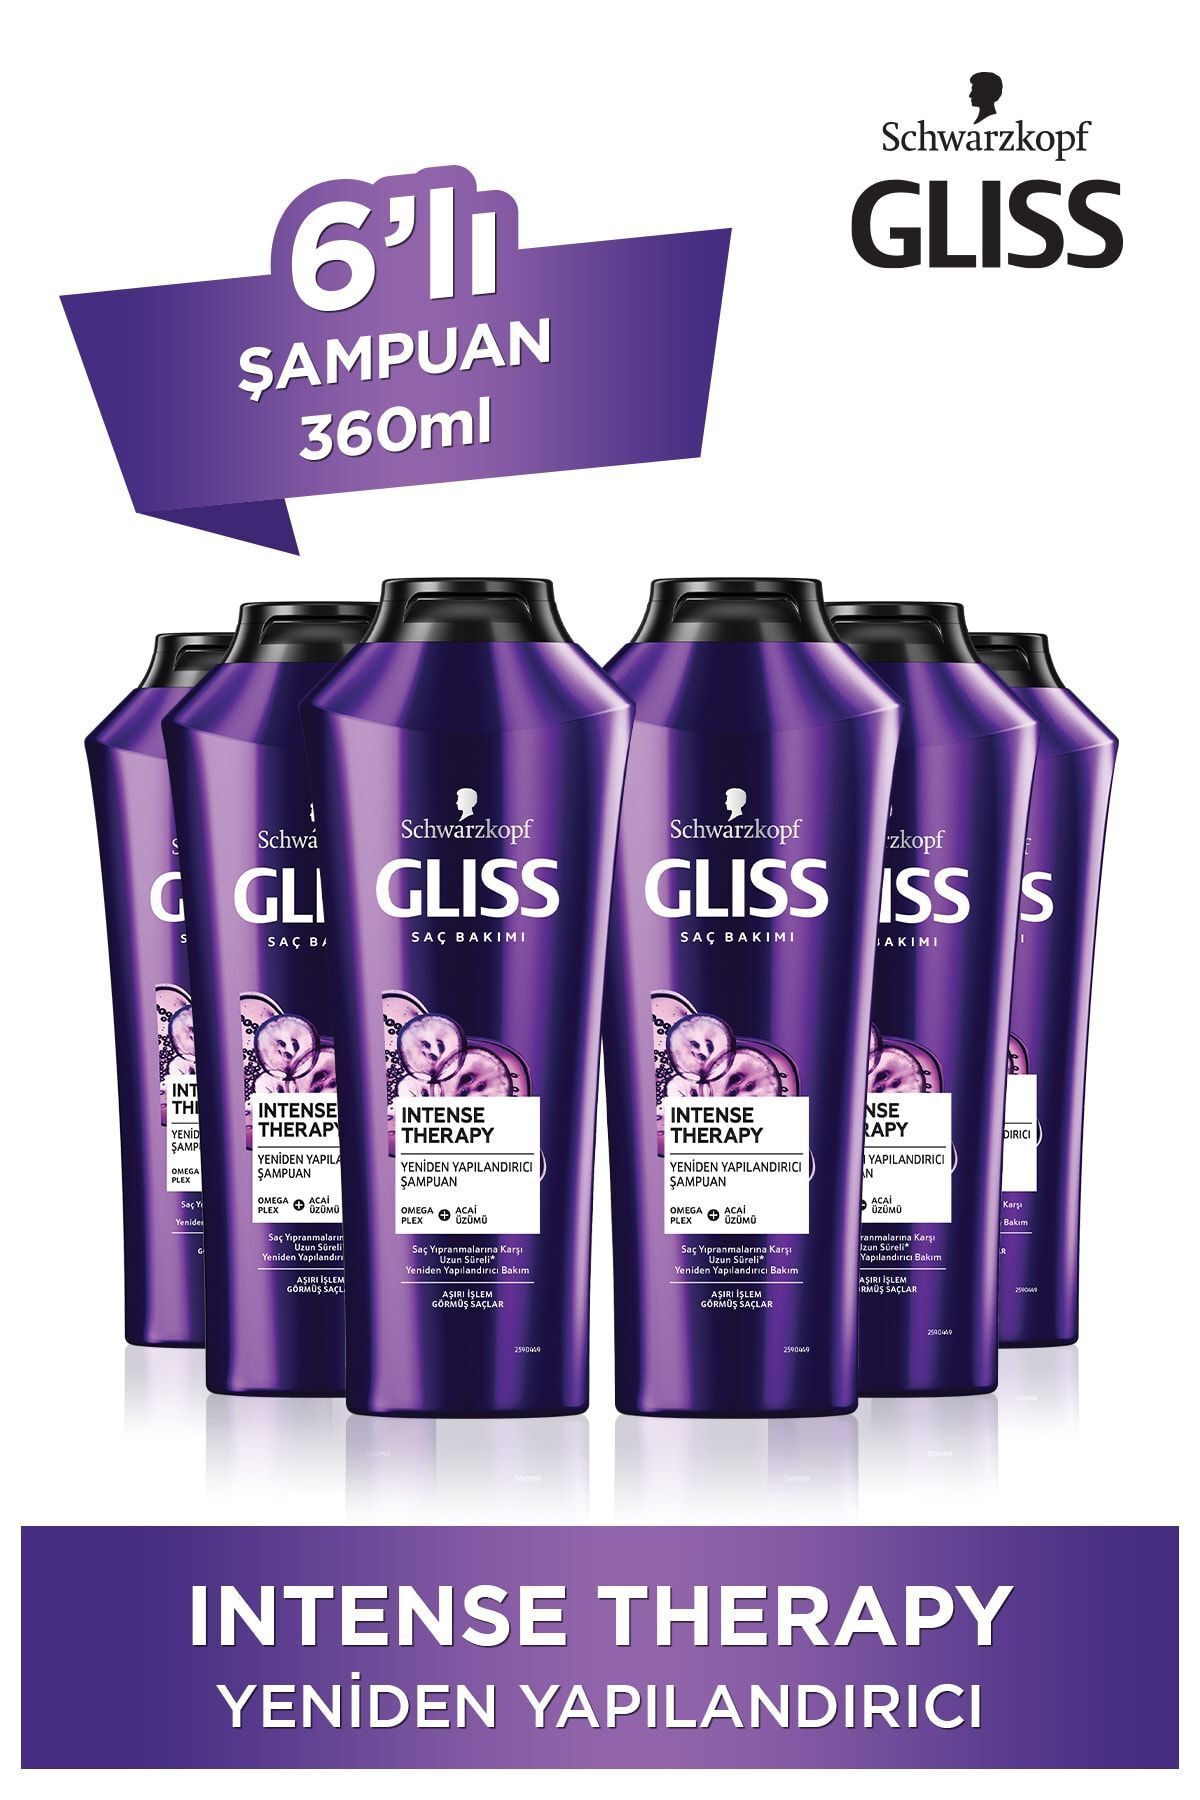 Gliss Intense Therapy Yeniden Yapılandırıcı Şampuan - Omega Plex Ve Acai Üzümü Ile 360 ml X 6 Adet